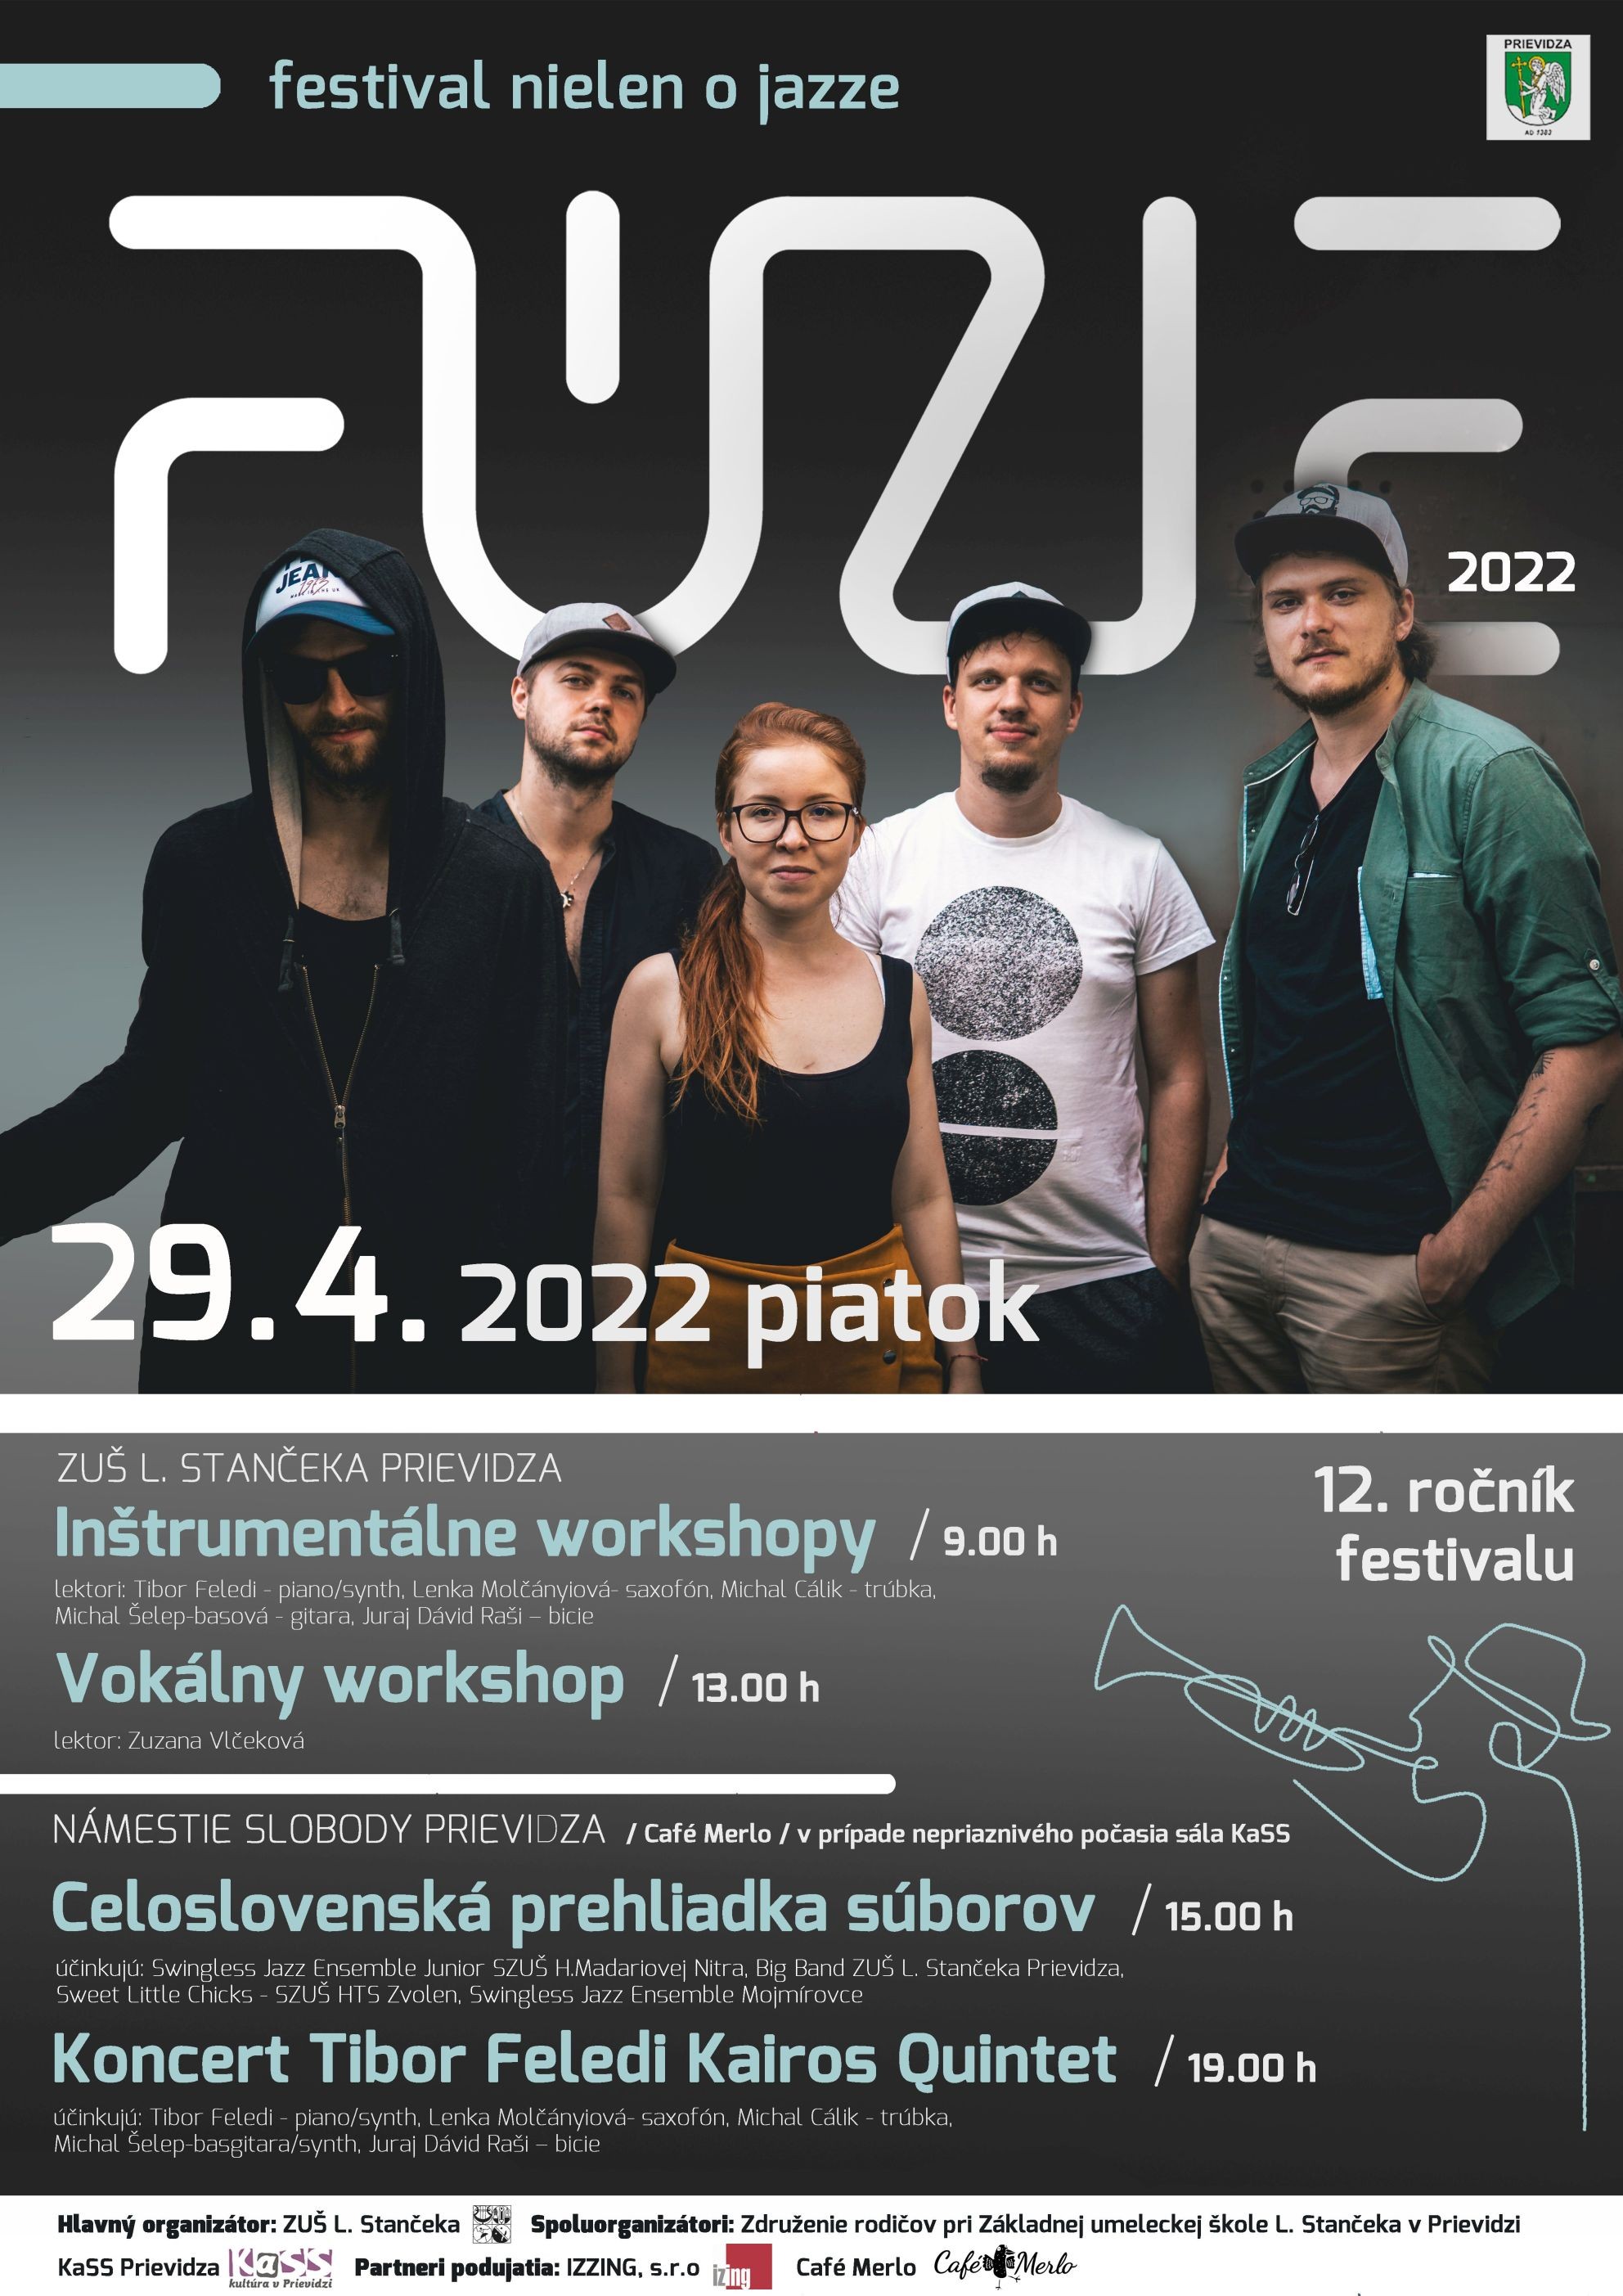 fuzie-2022-plagat1.jpg